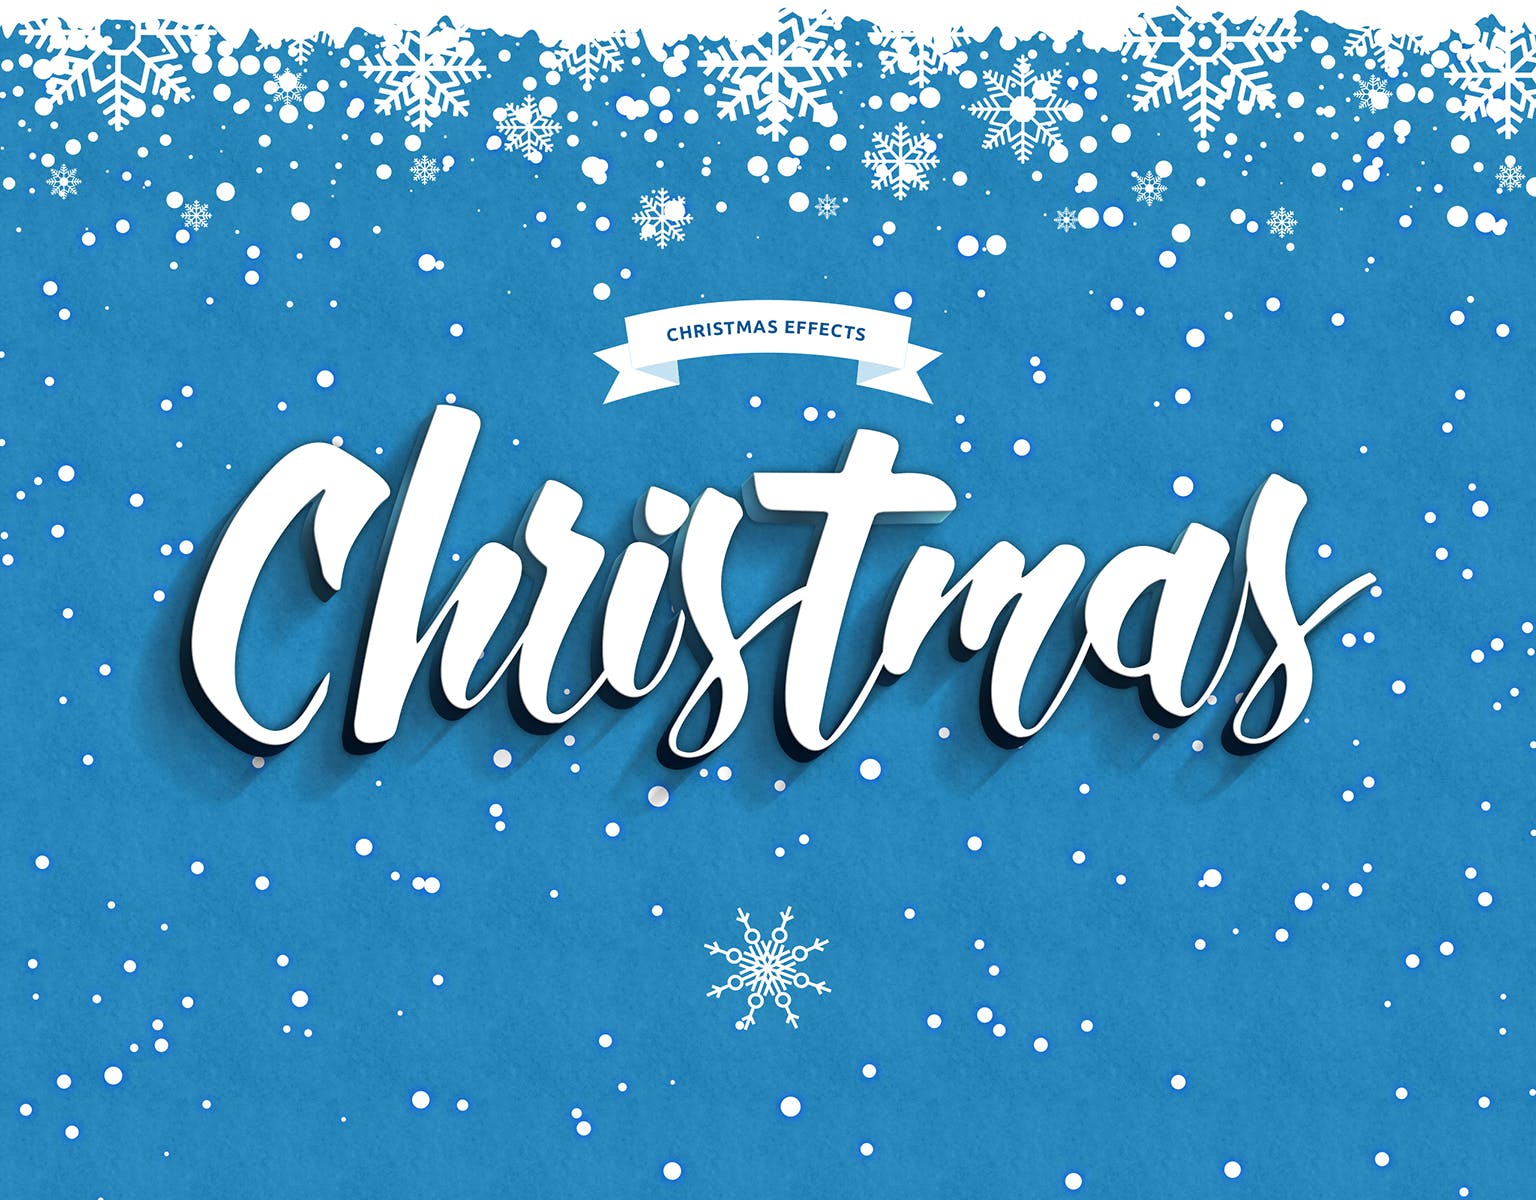 圣诞节主题海报文字样式PSD分层模板 Christmas Text Effects插图(6)